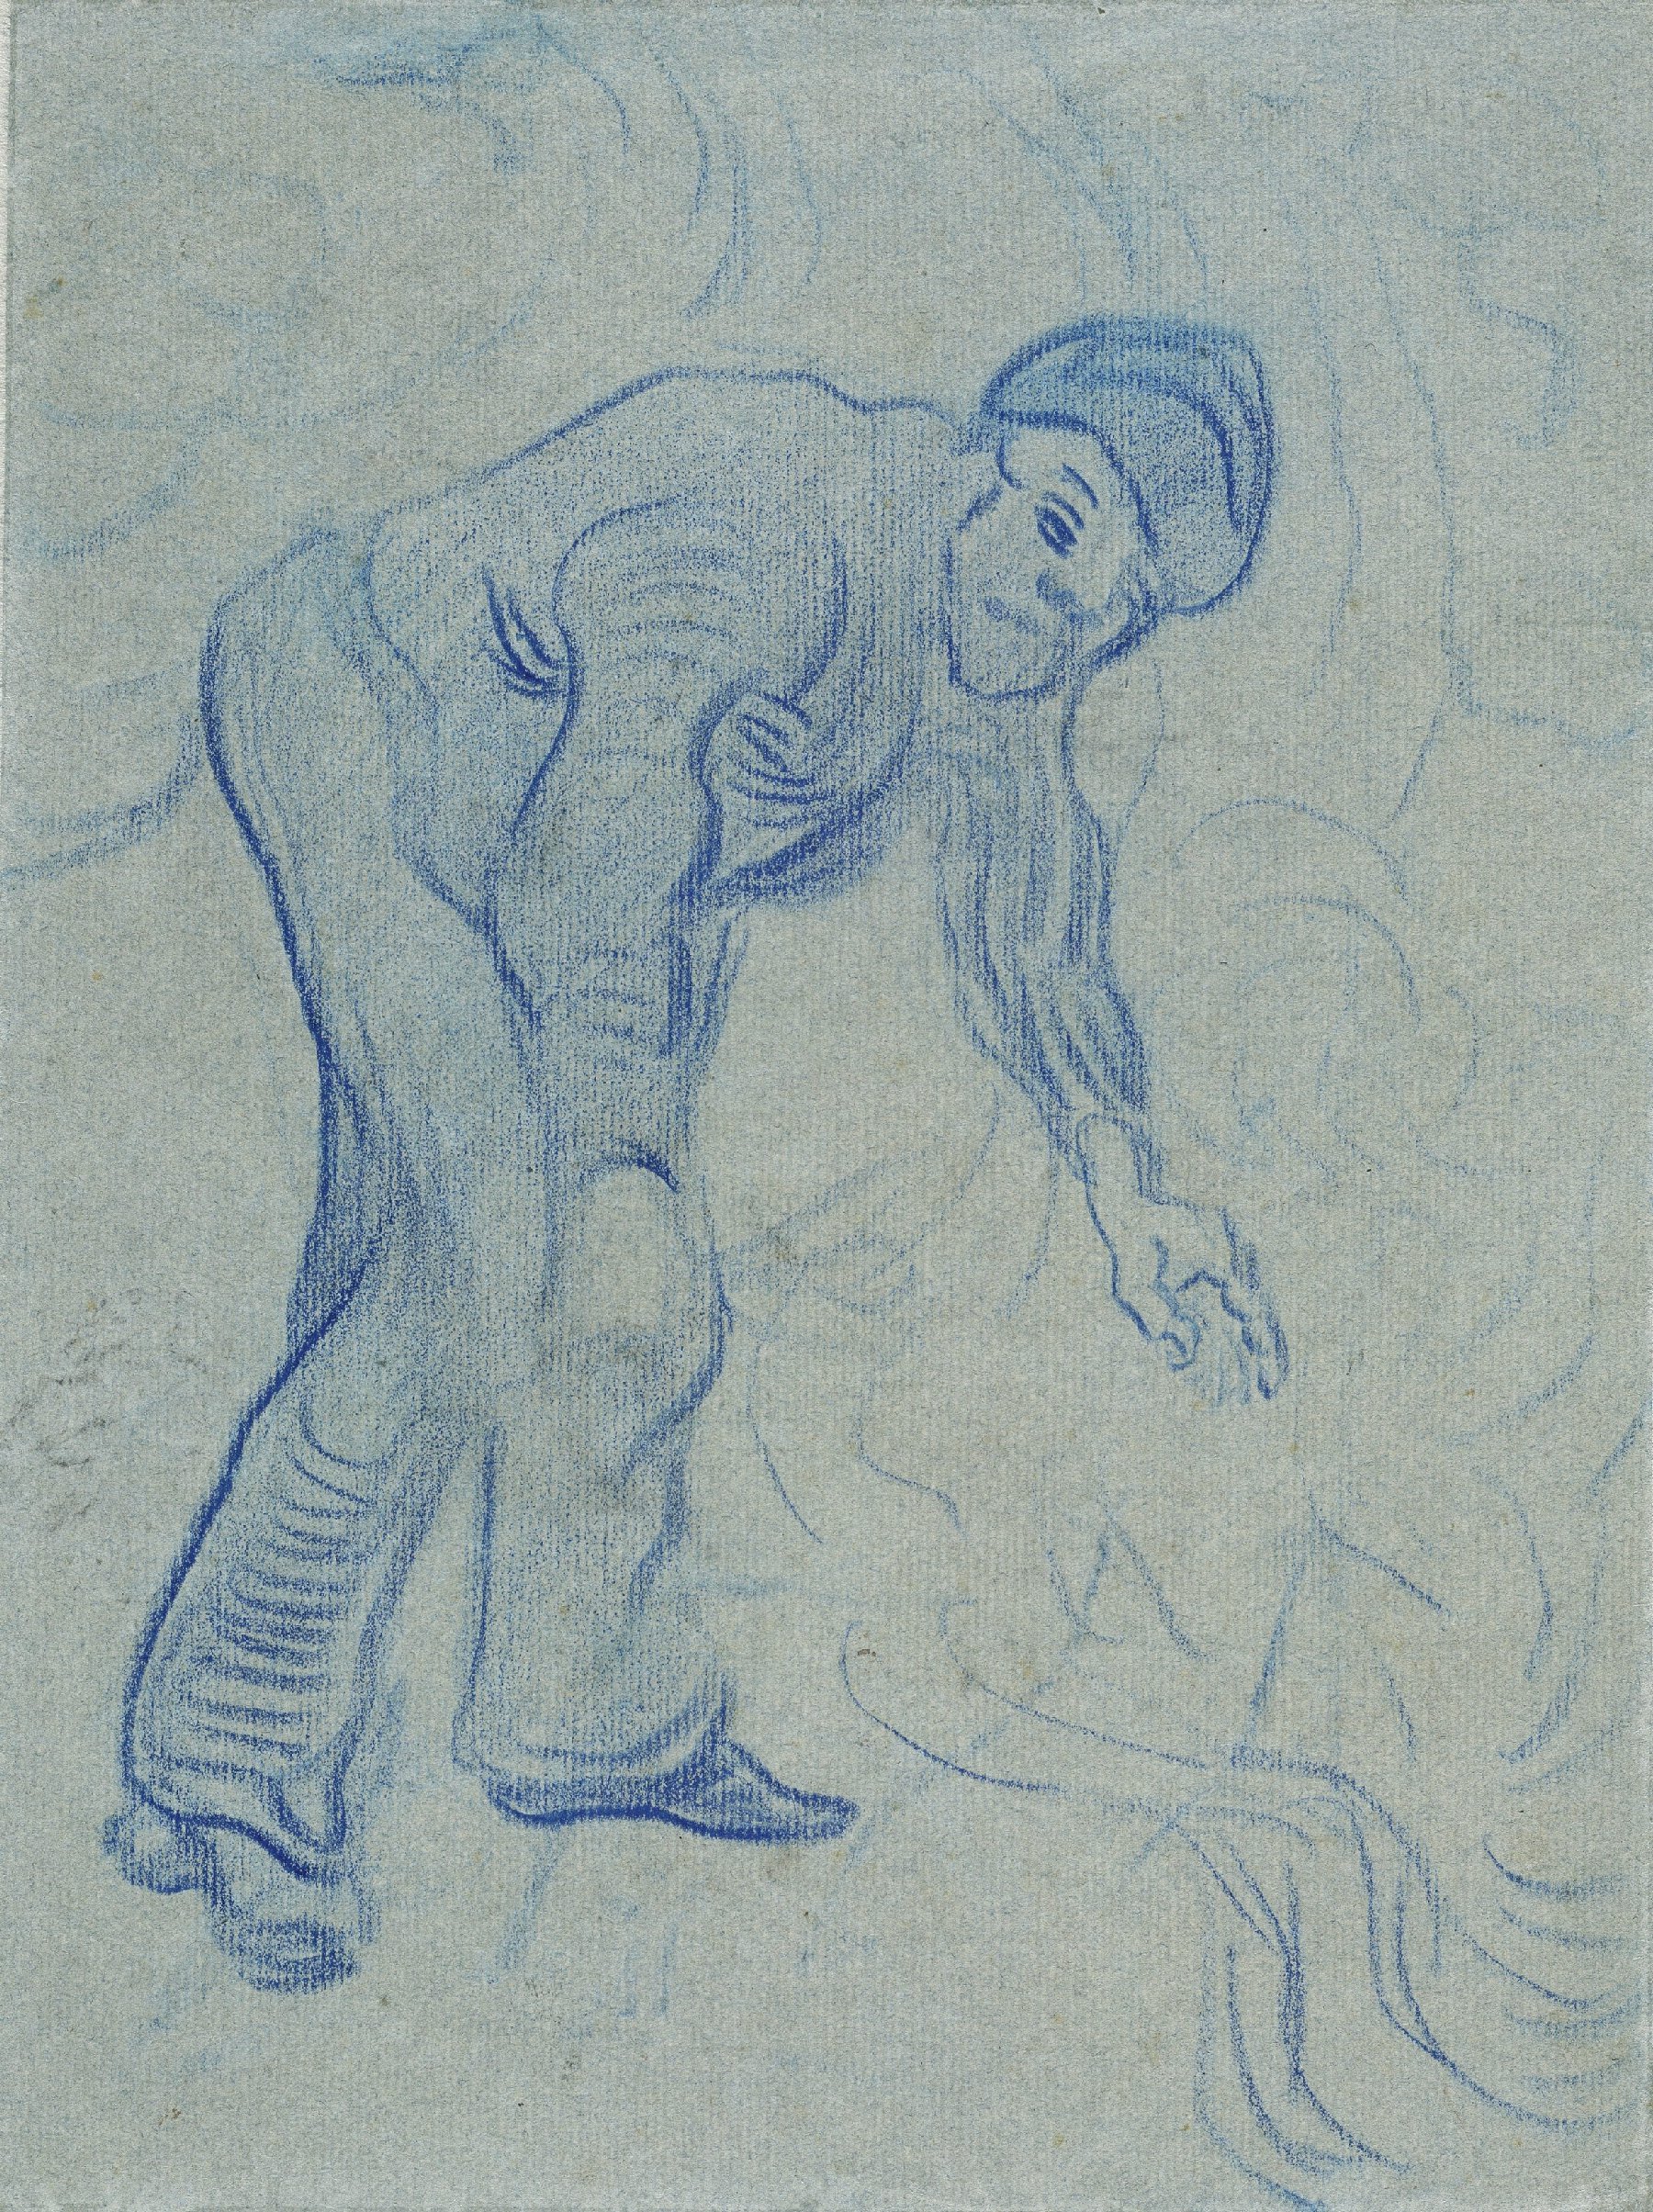 Bukkende man Vincent van Gogh (1853 - 1890), Auvers-sur-Oise, juli 1890